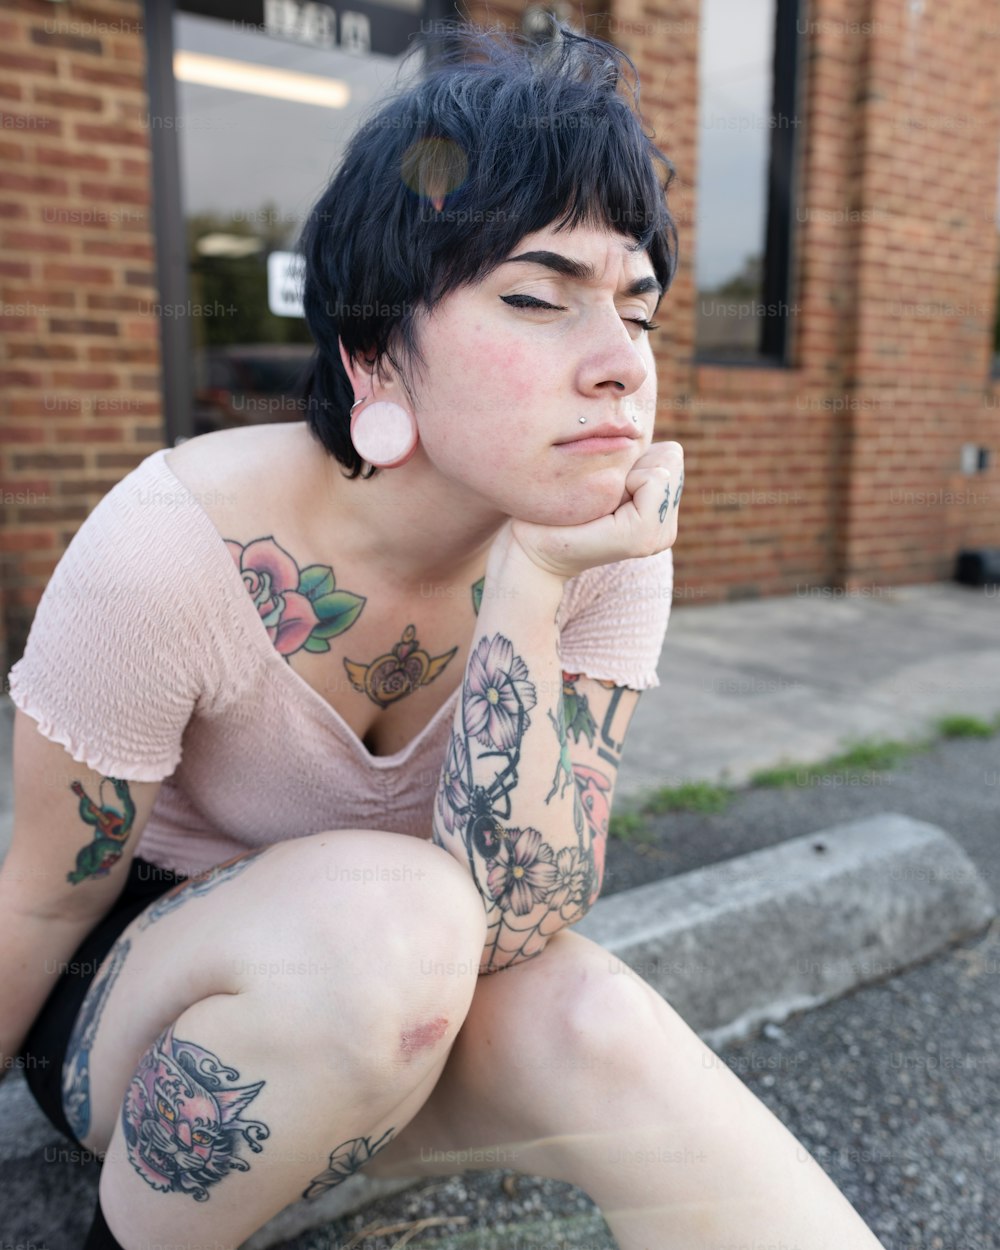 Una mujer con tatuajes sentada en el suelo